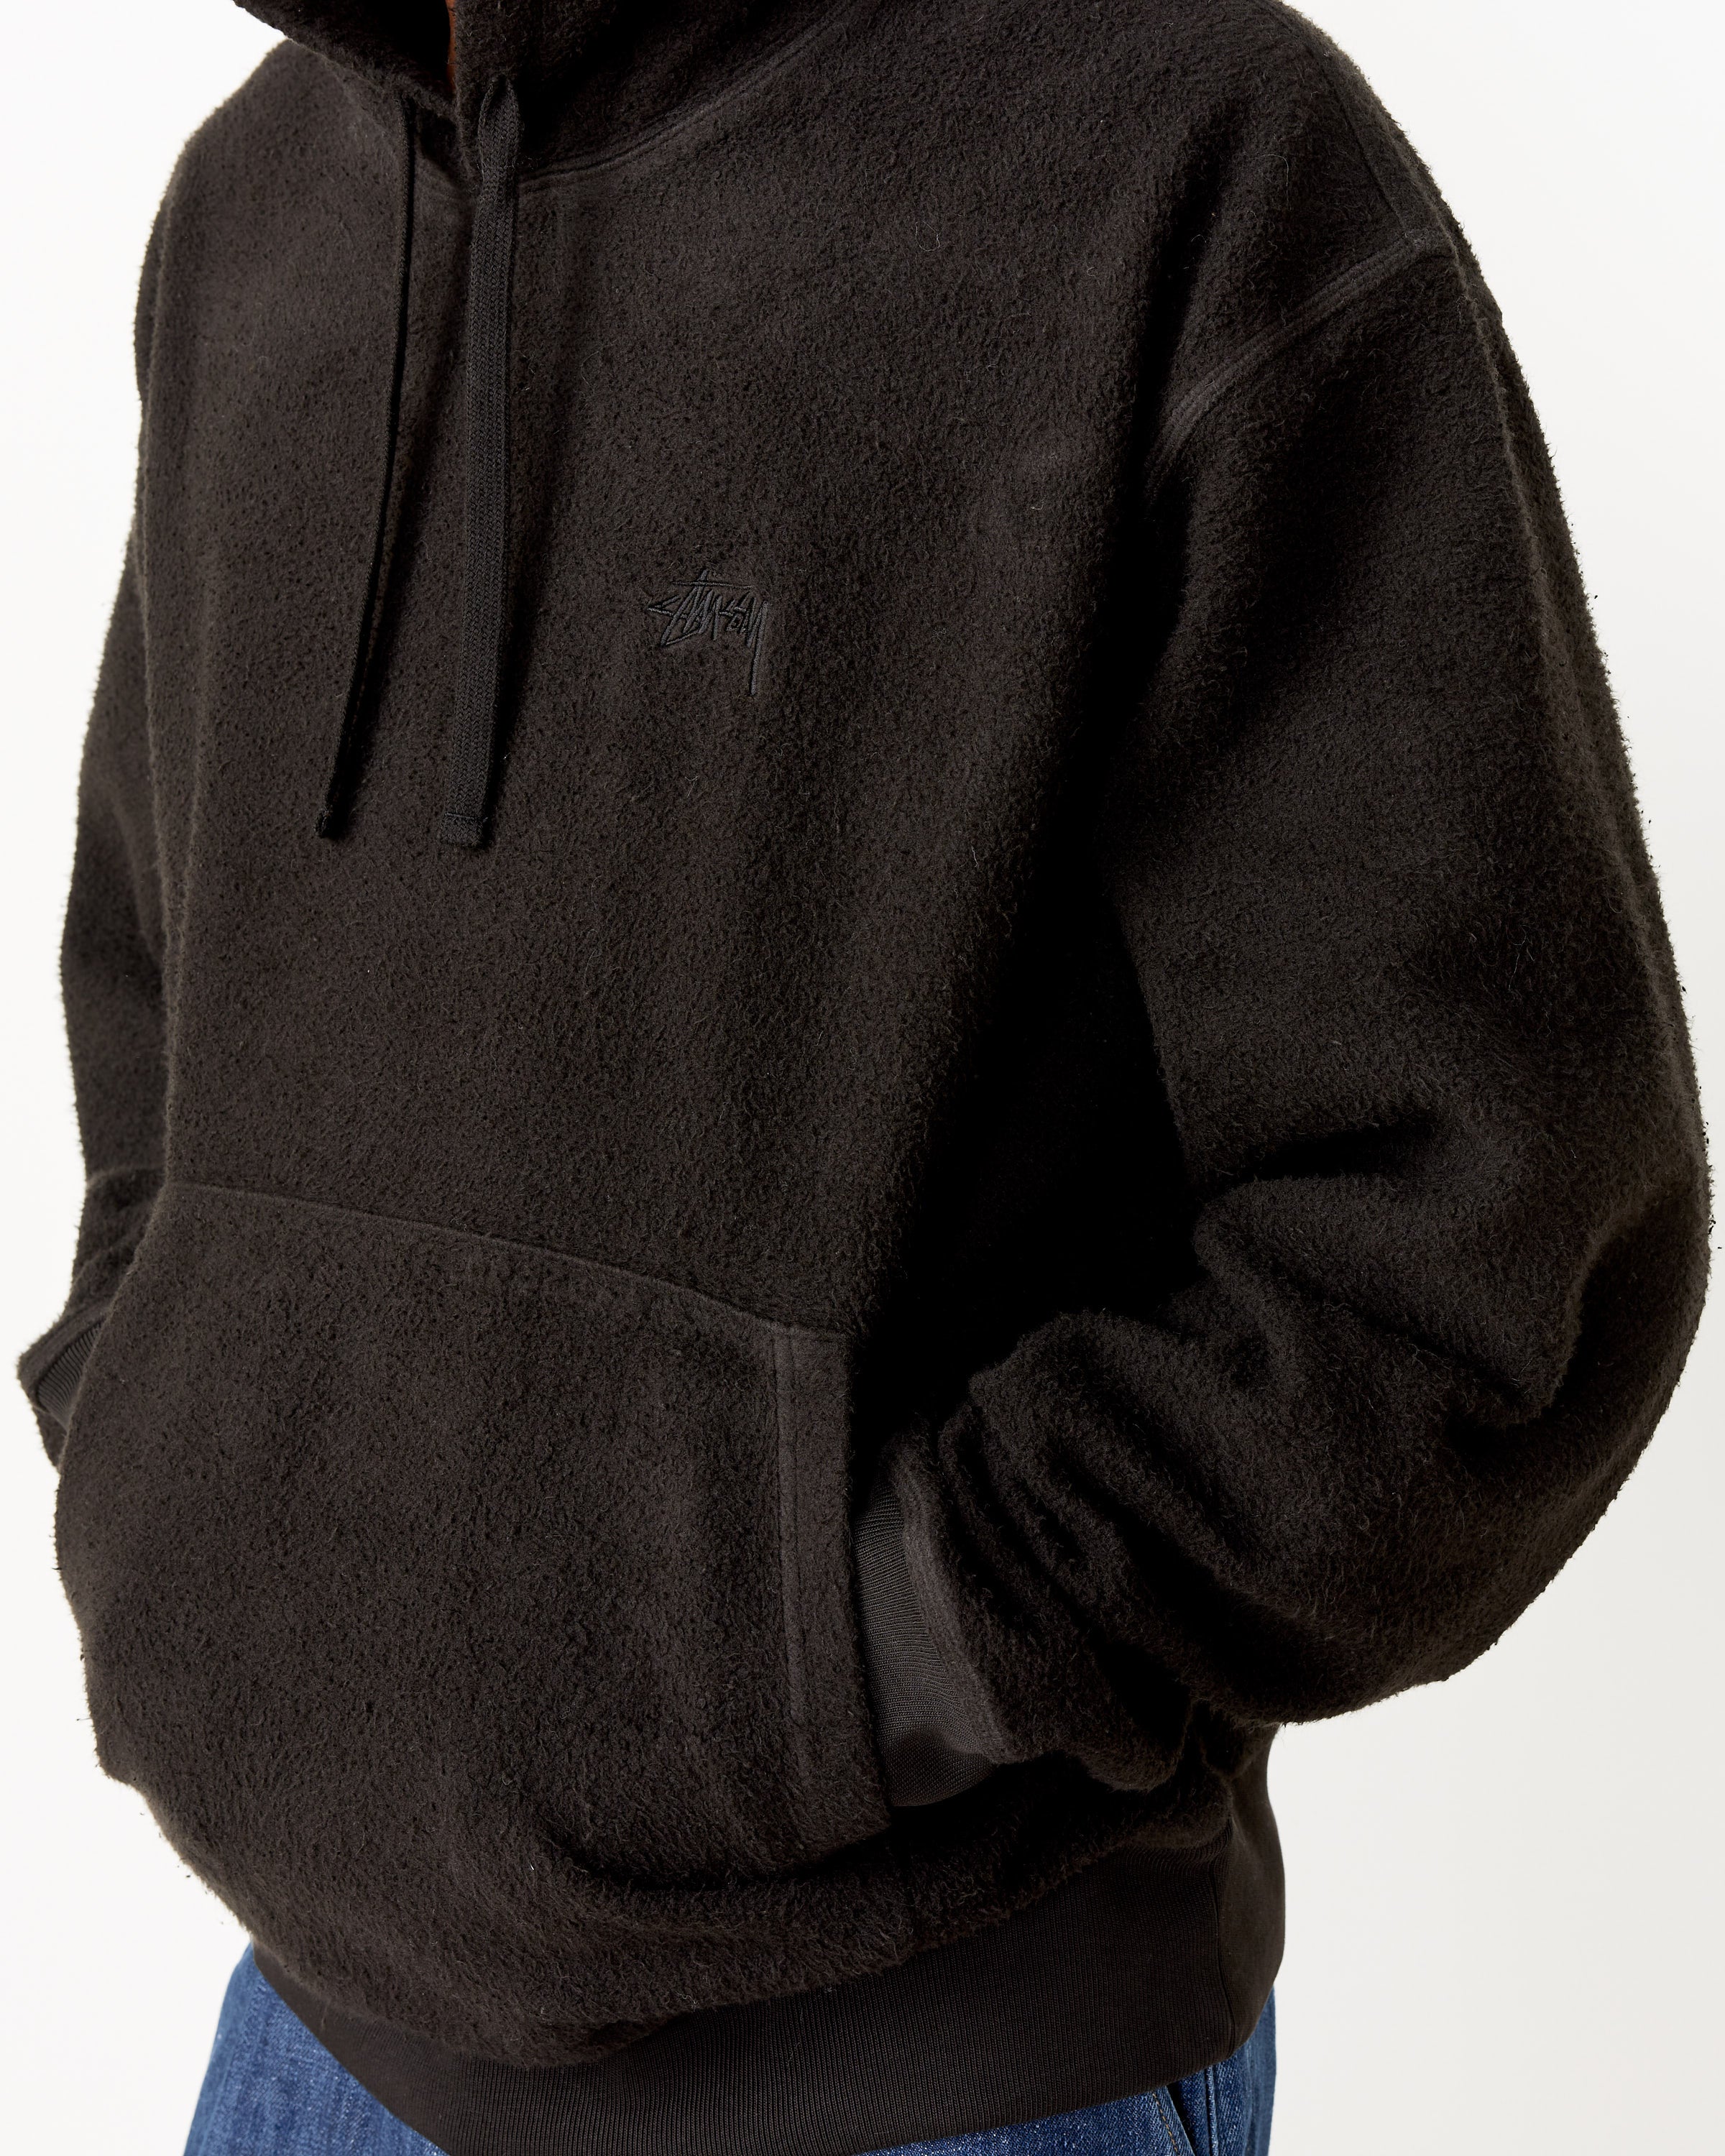 Inside Out Fleece Hood in Black